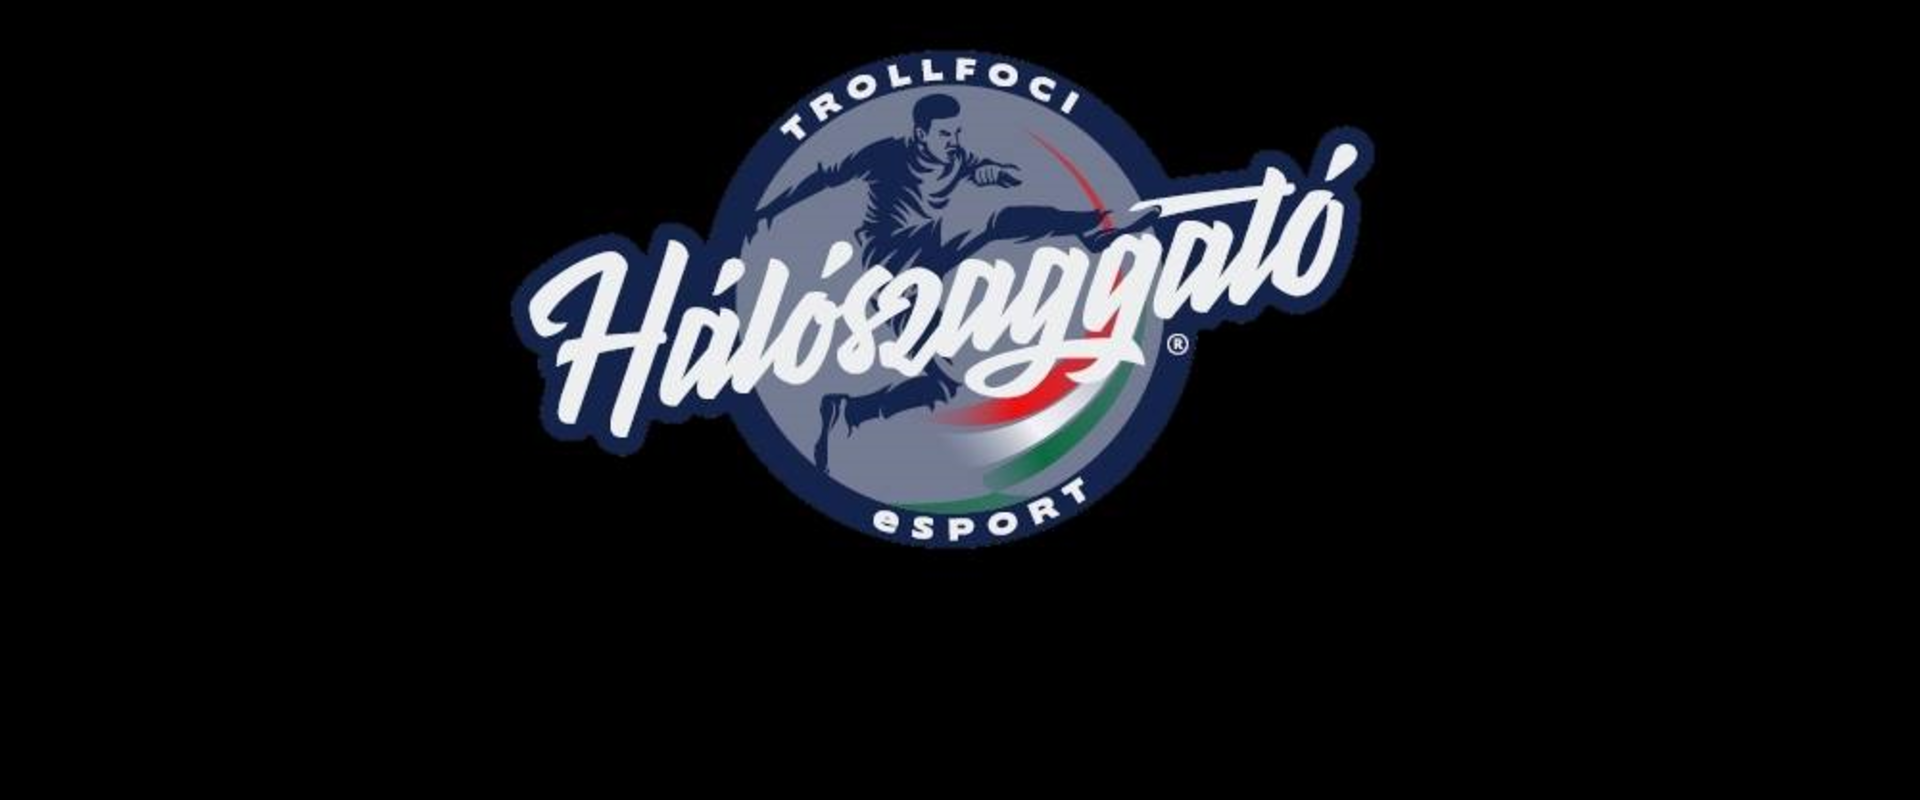 Hálót szaggatna a magyar Pro Clubs bajnokságban a TrollFoci új Esport csapata!